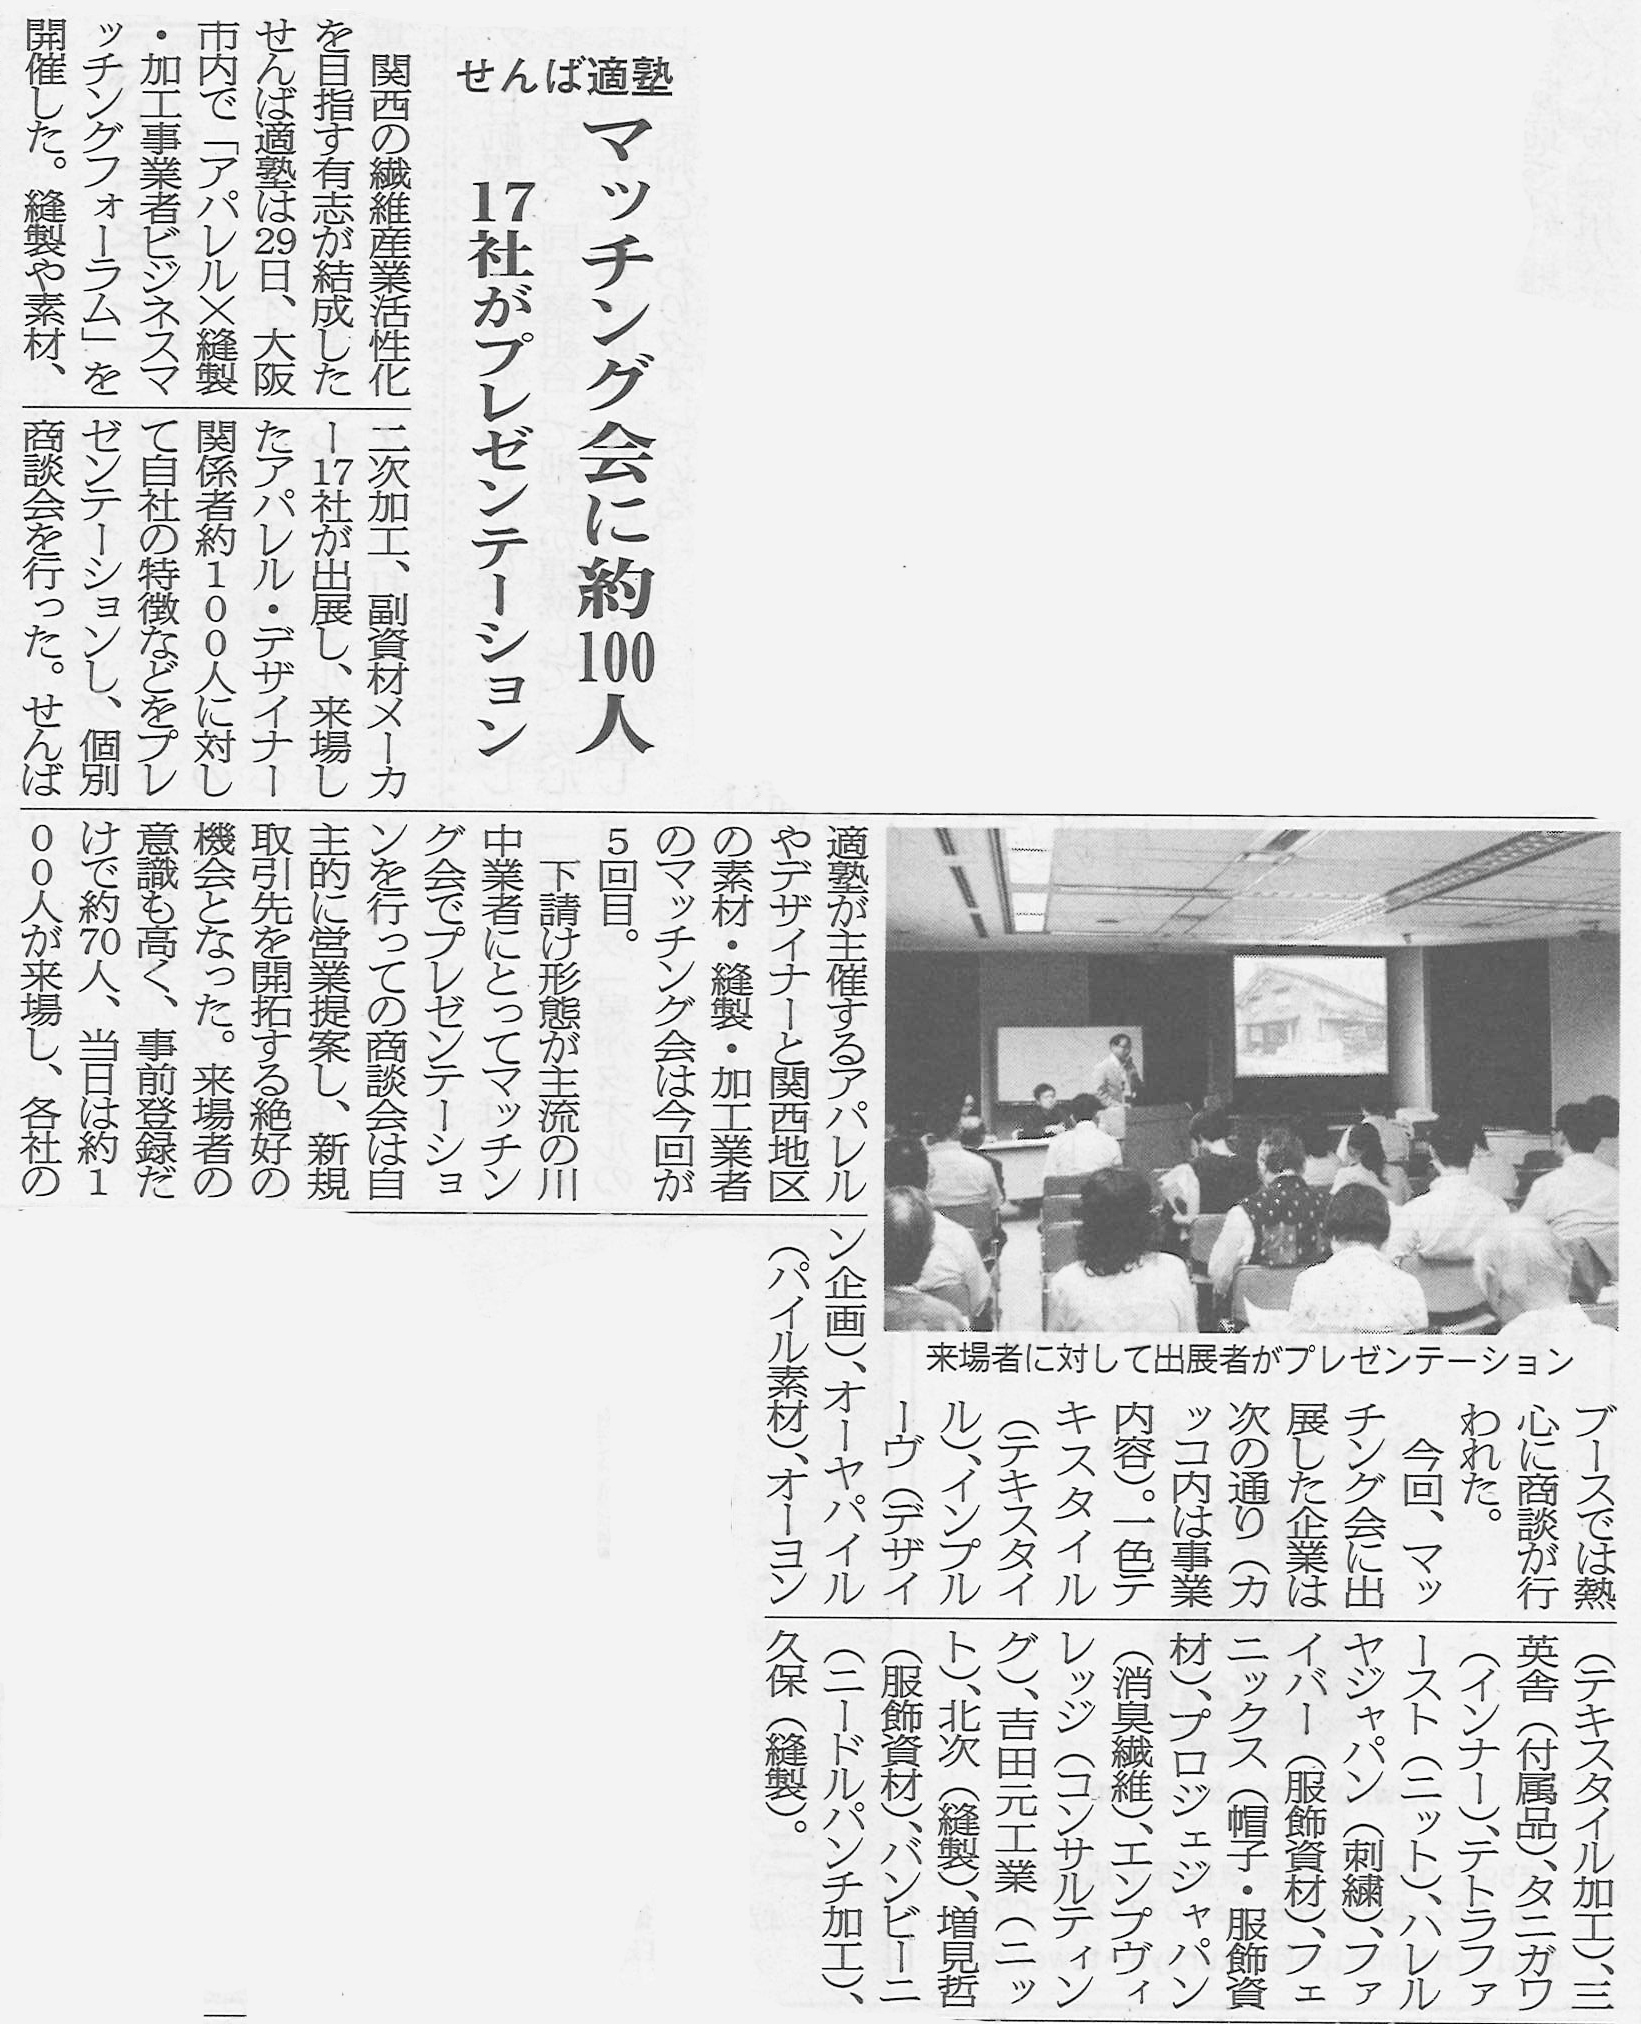 2014/7/31 「ビジネスマッチングフォーラムvol.5」が繊維ニュースに掲載されました。